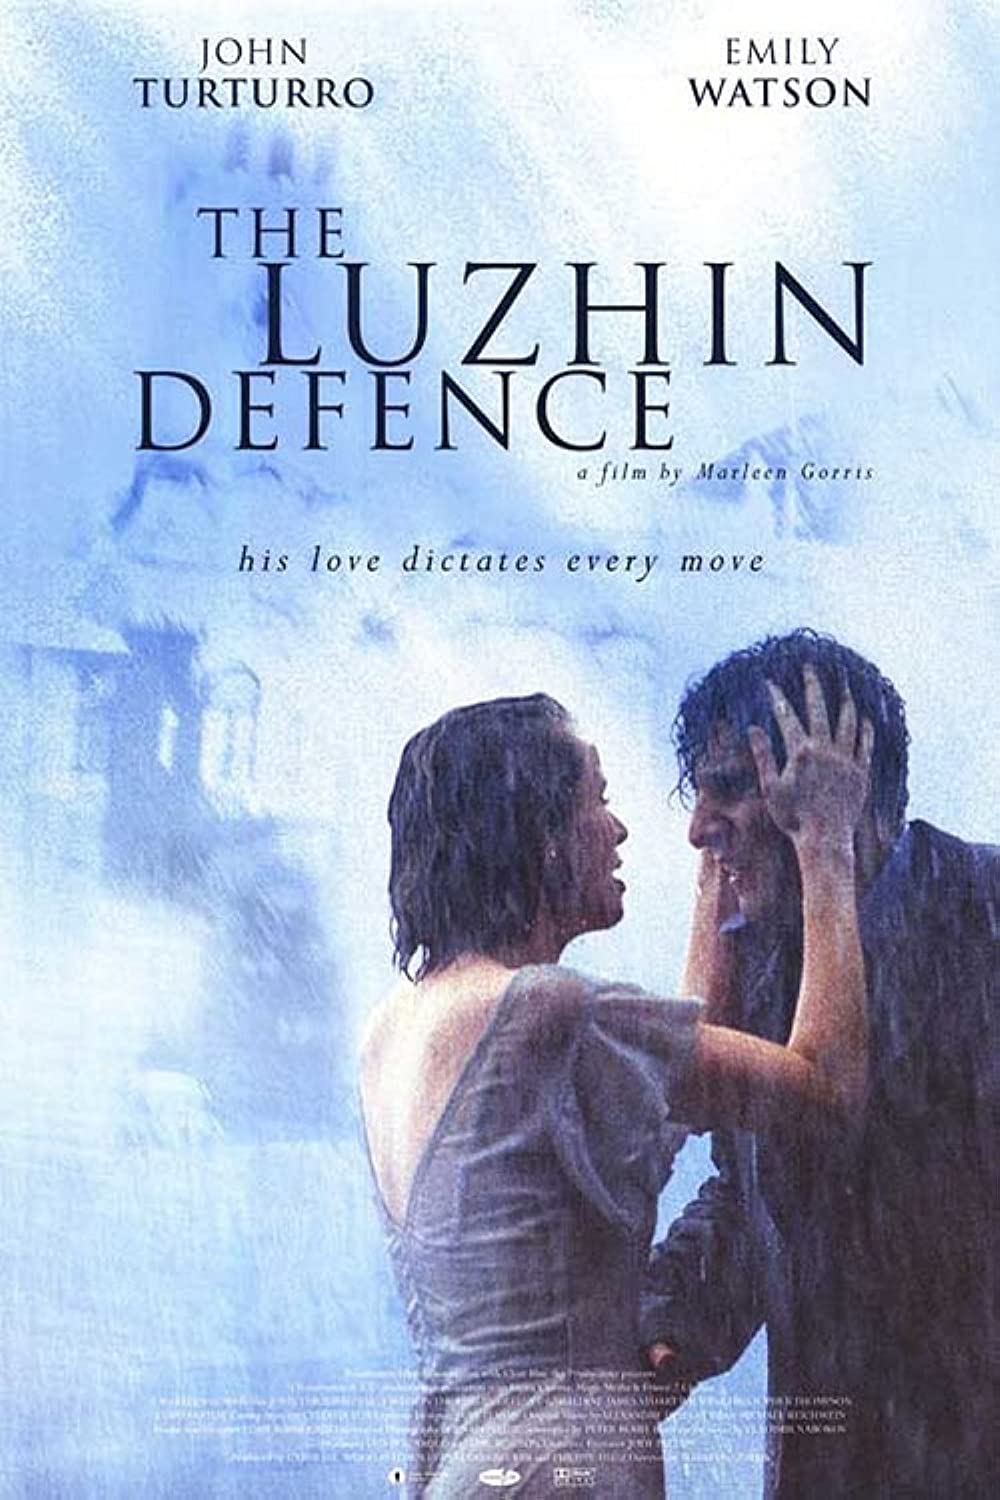 Filmbeschreibung zu Lushins Verteidigung